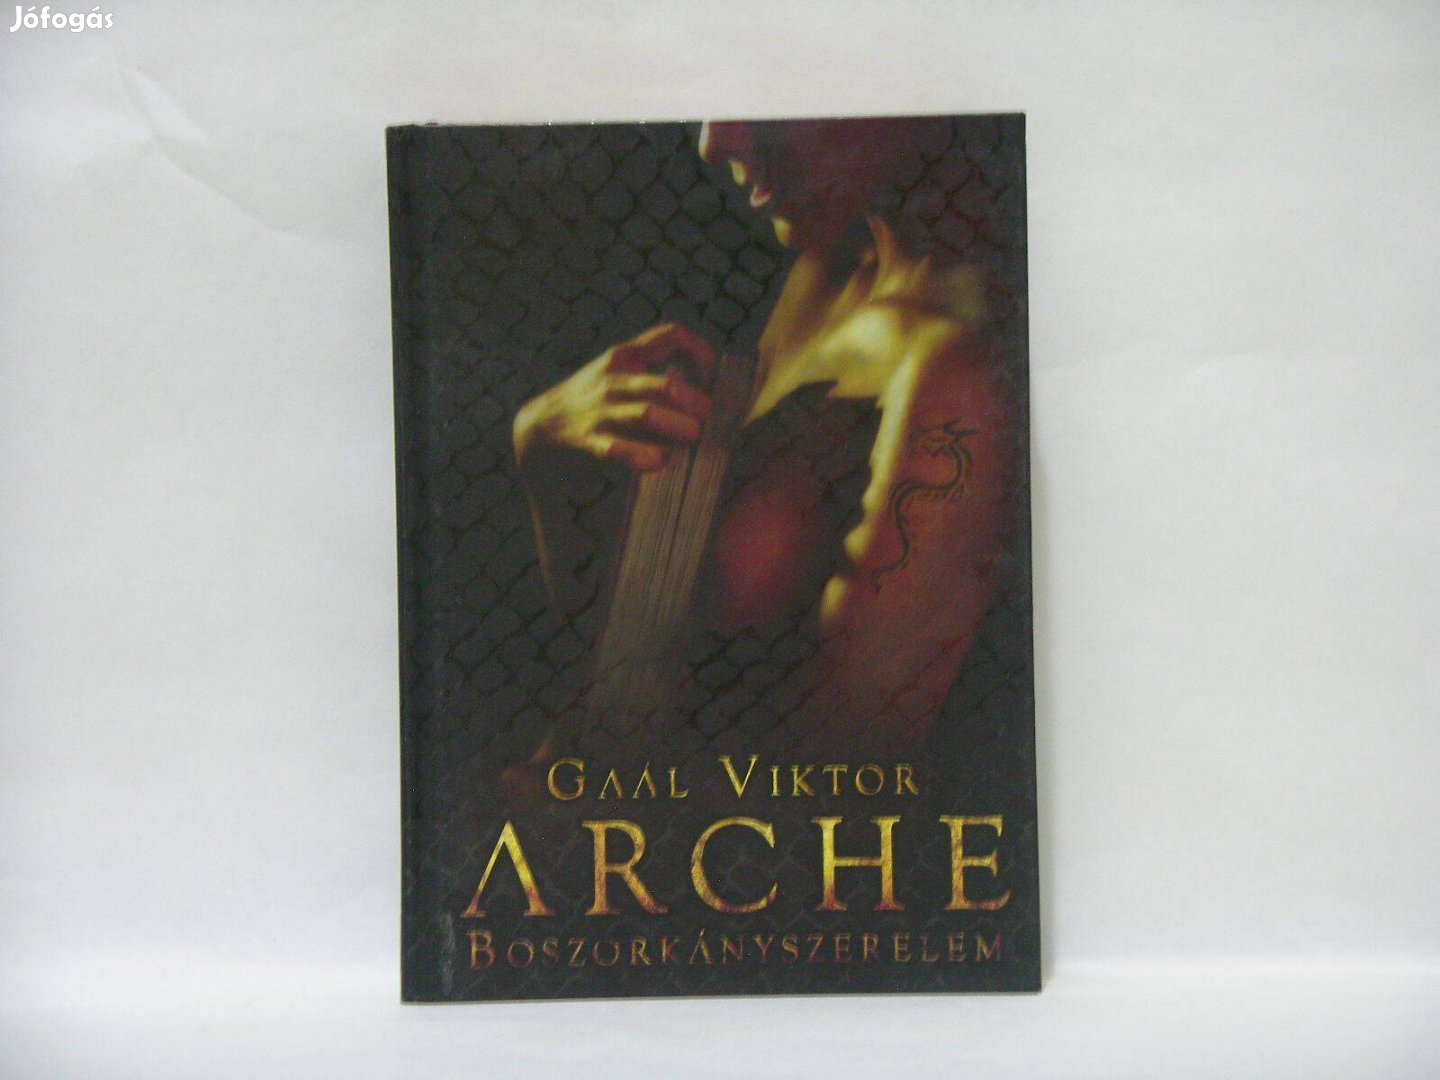 Arche - Boszorkányszerelem - Gaál Viktor keménytáblás exlibris könyve